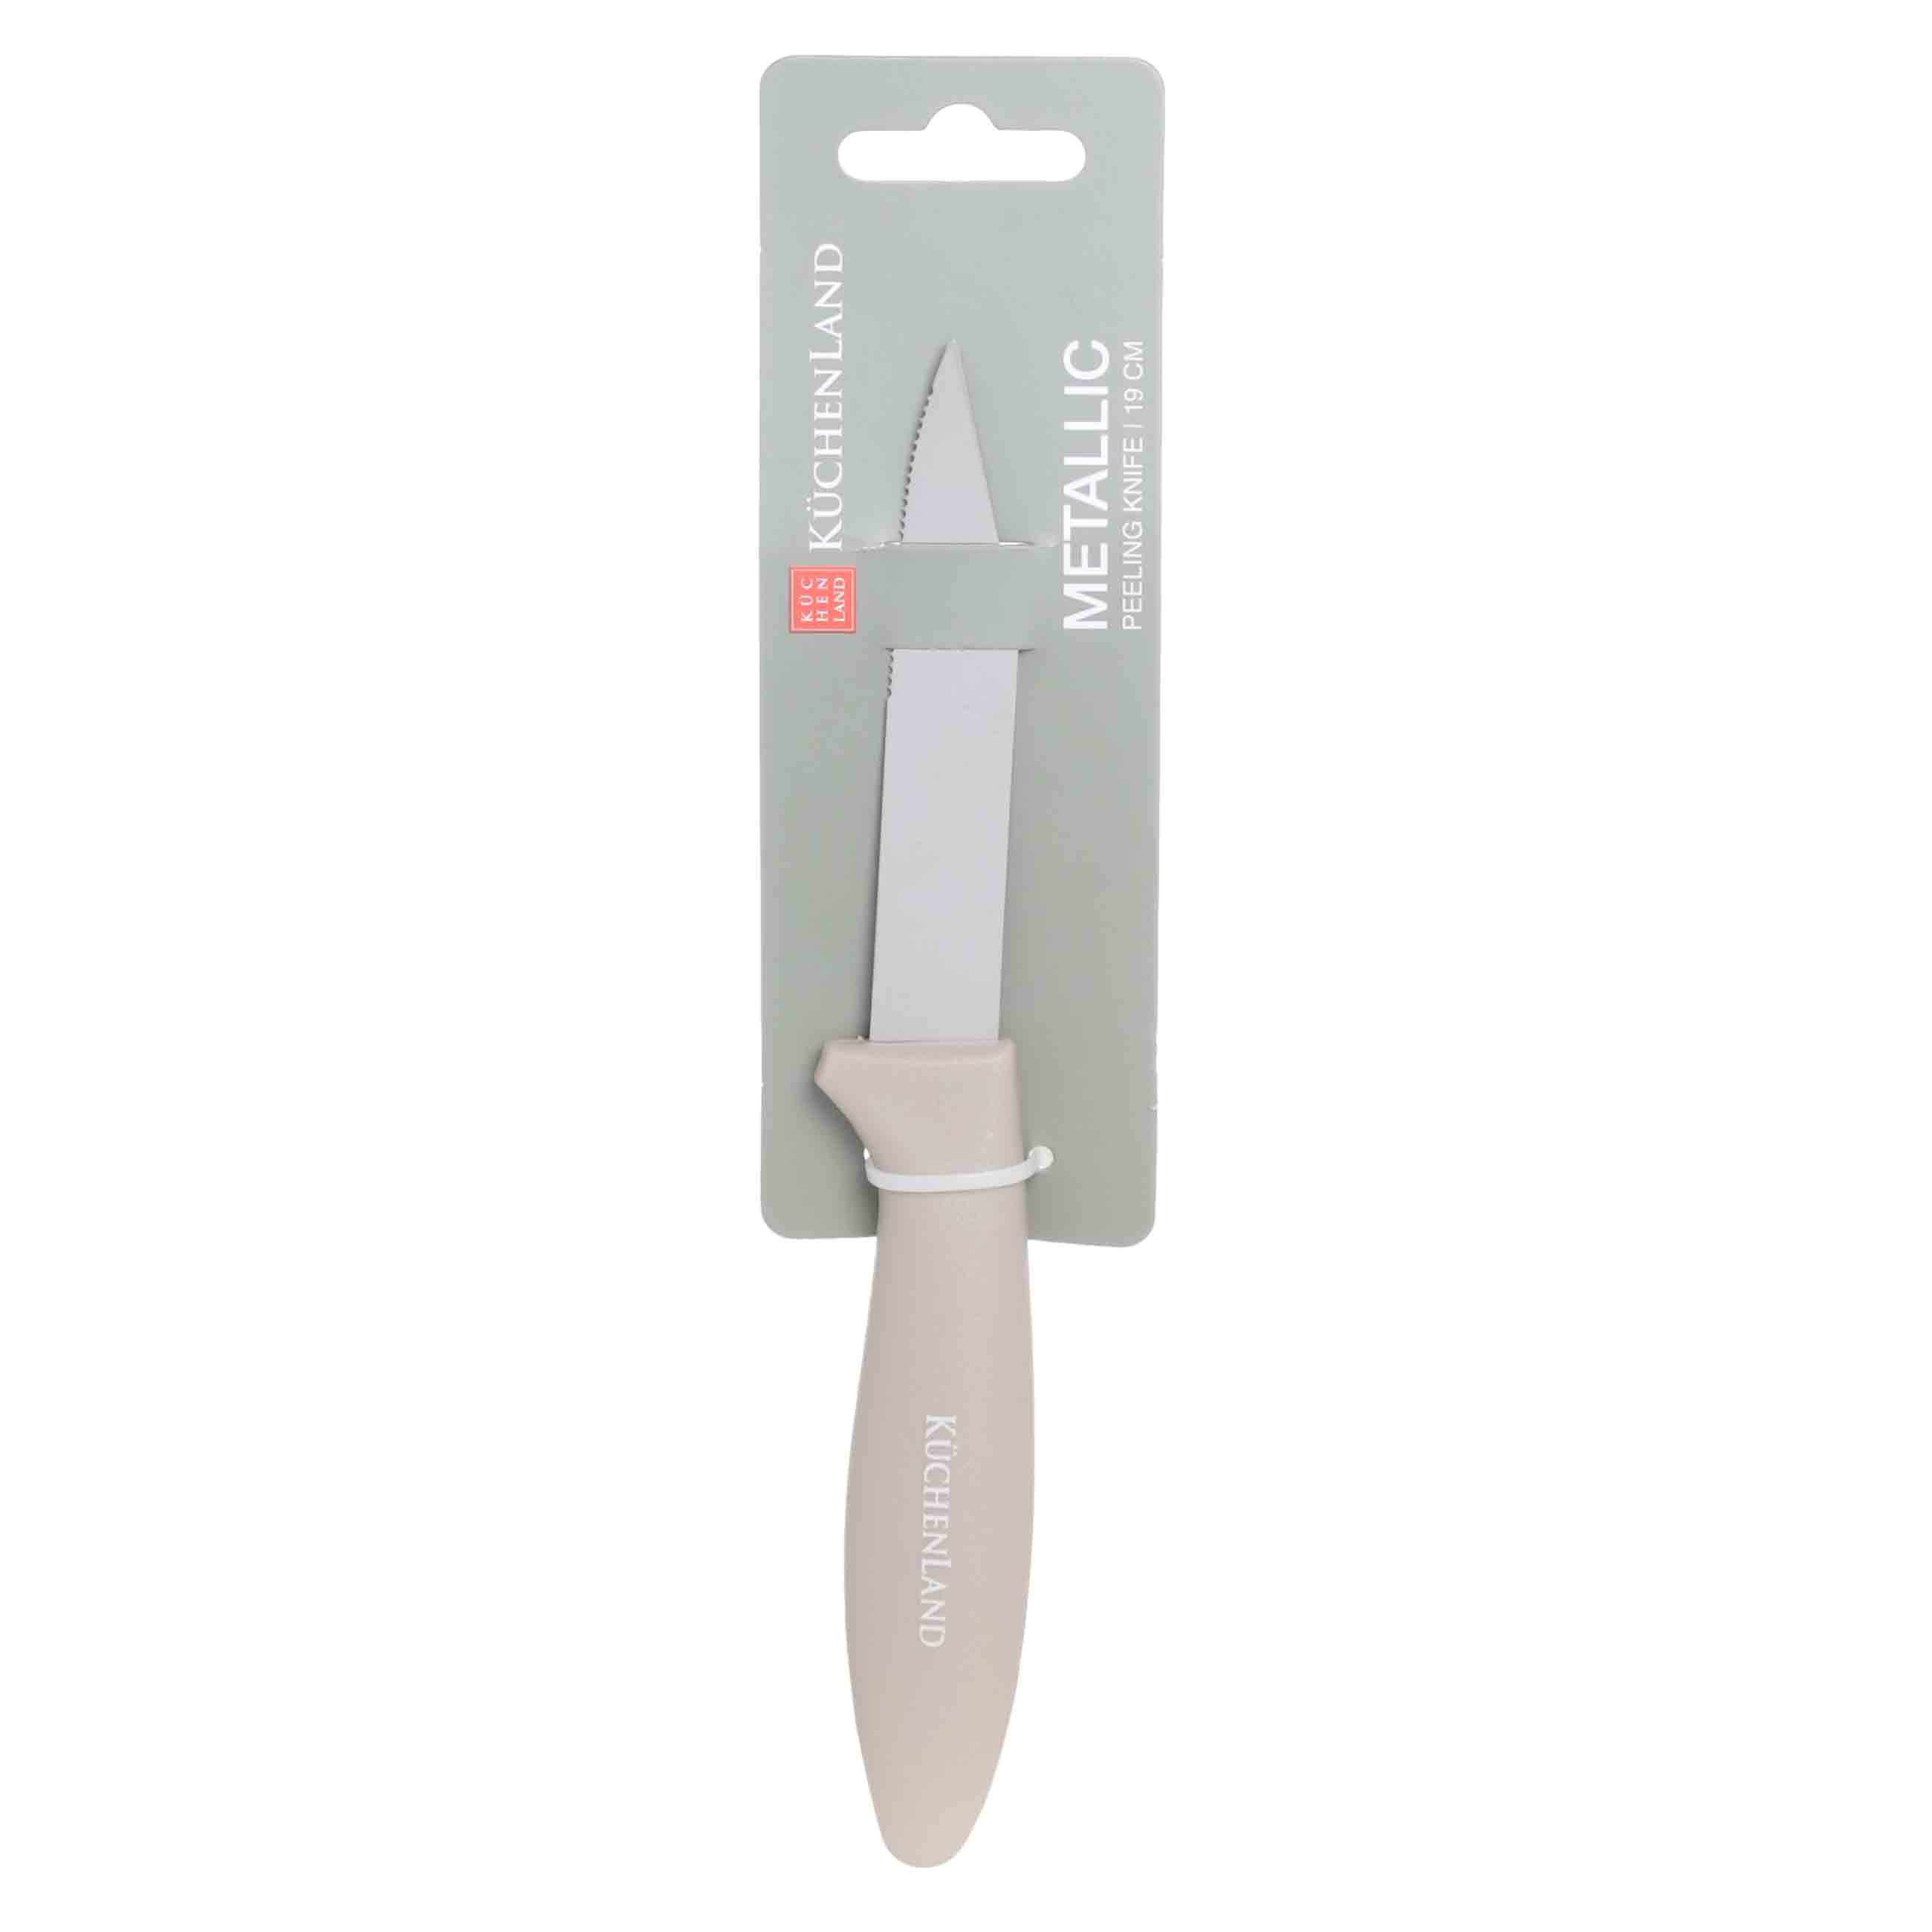 Нож для чистки овощей, 8 см, сталь/пластик, серо-коричневый, Regular изображение № 2